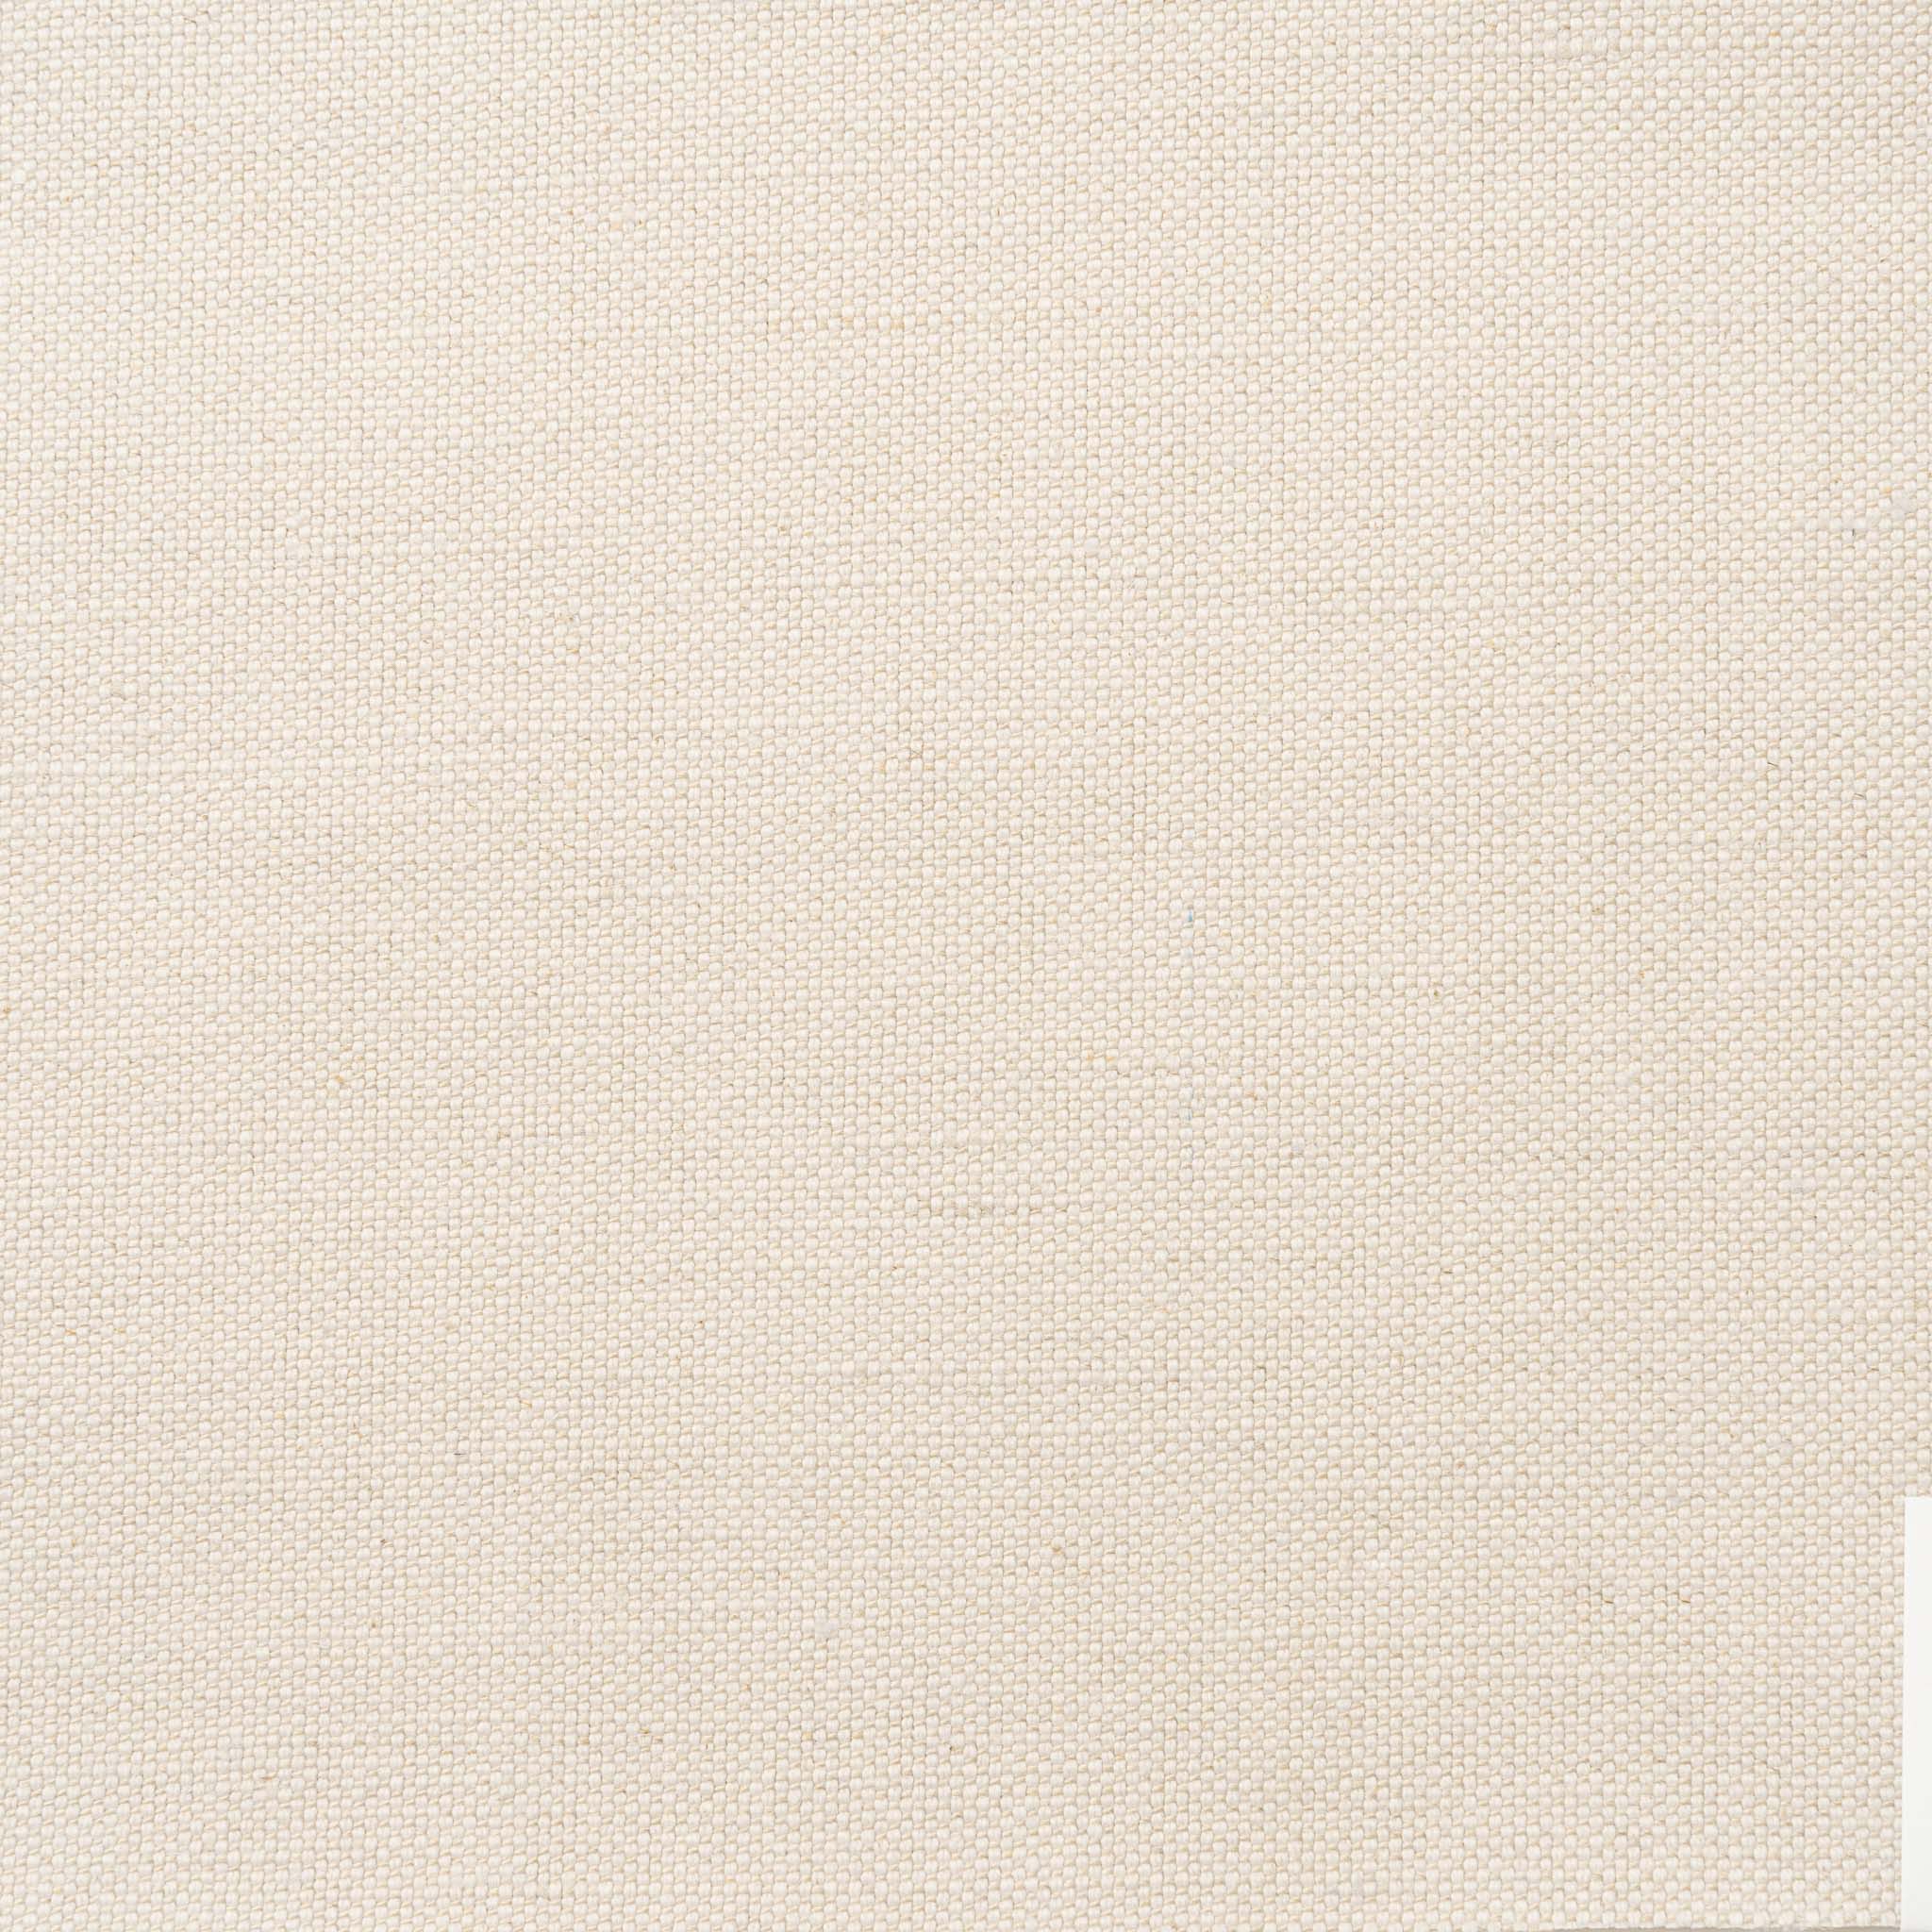 Woven Plain Fabric - Clovelly 50/0 Sea Salt | Nicholas Engert Interiors